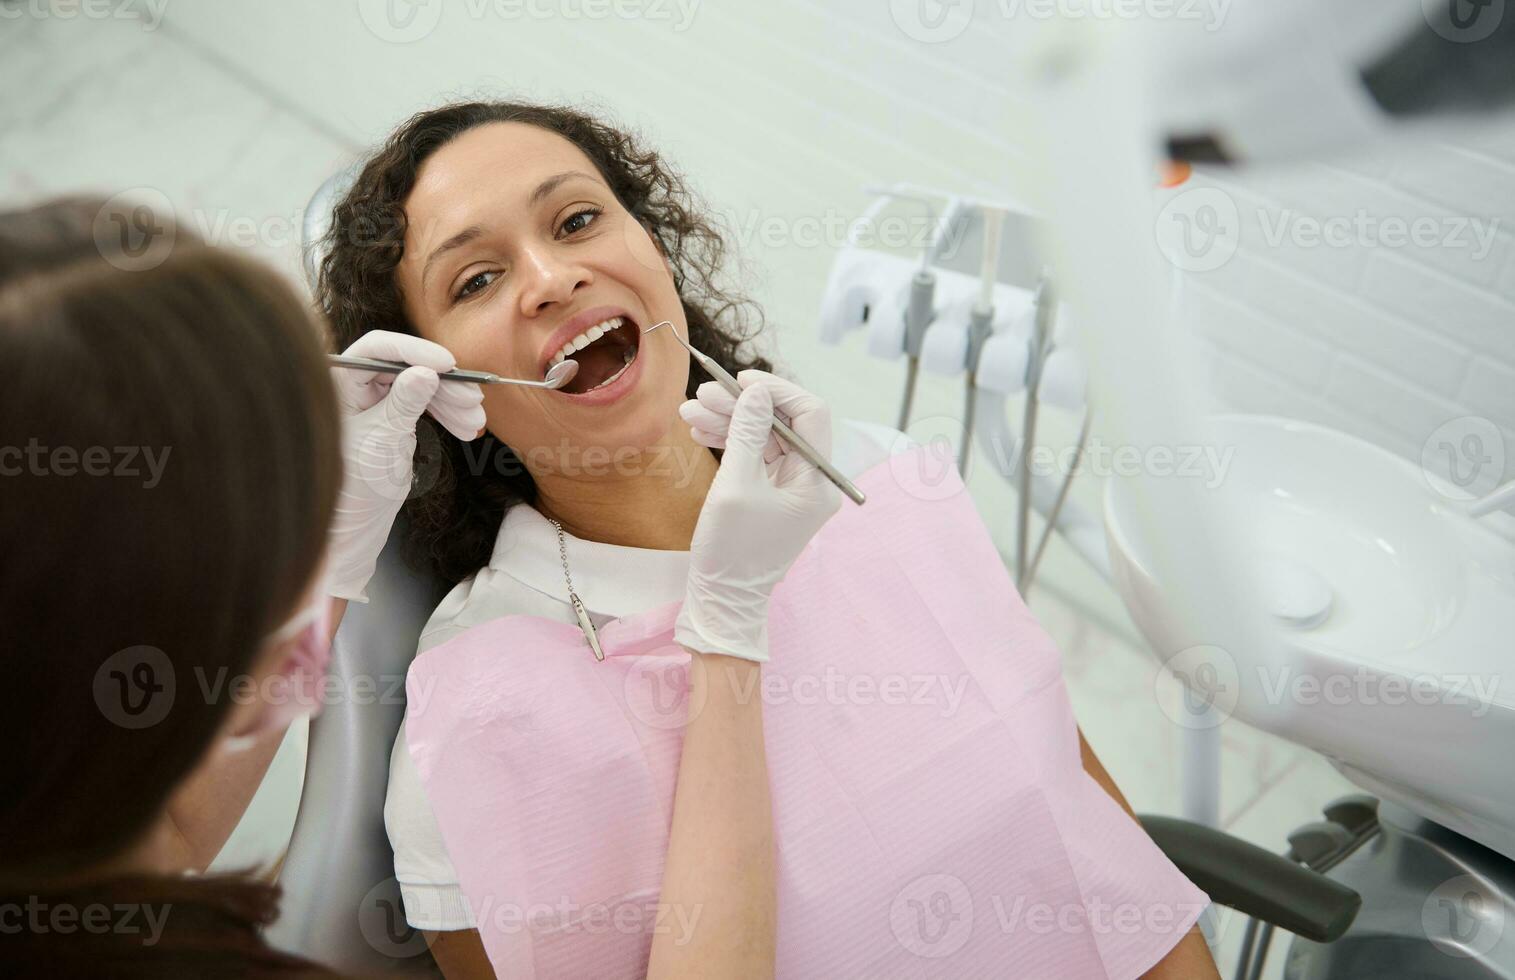 atractivo joven mujer con hermosa sonrisa se sienta en el del dentista silla con su boca abierto mientras el higienista examina o trata su dientes utilizando inoxidable acero dental instrumentos - espejo y Investigacion foto